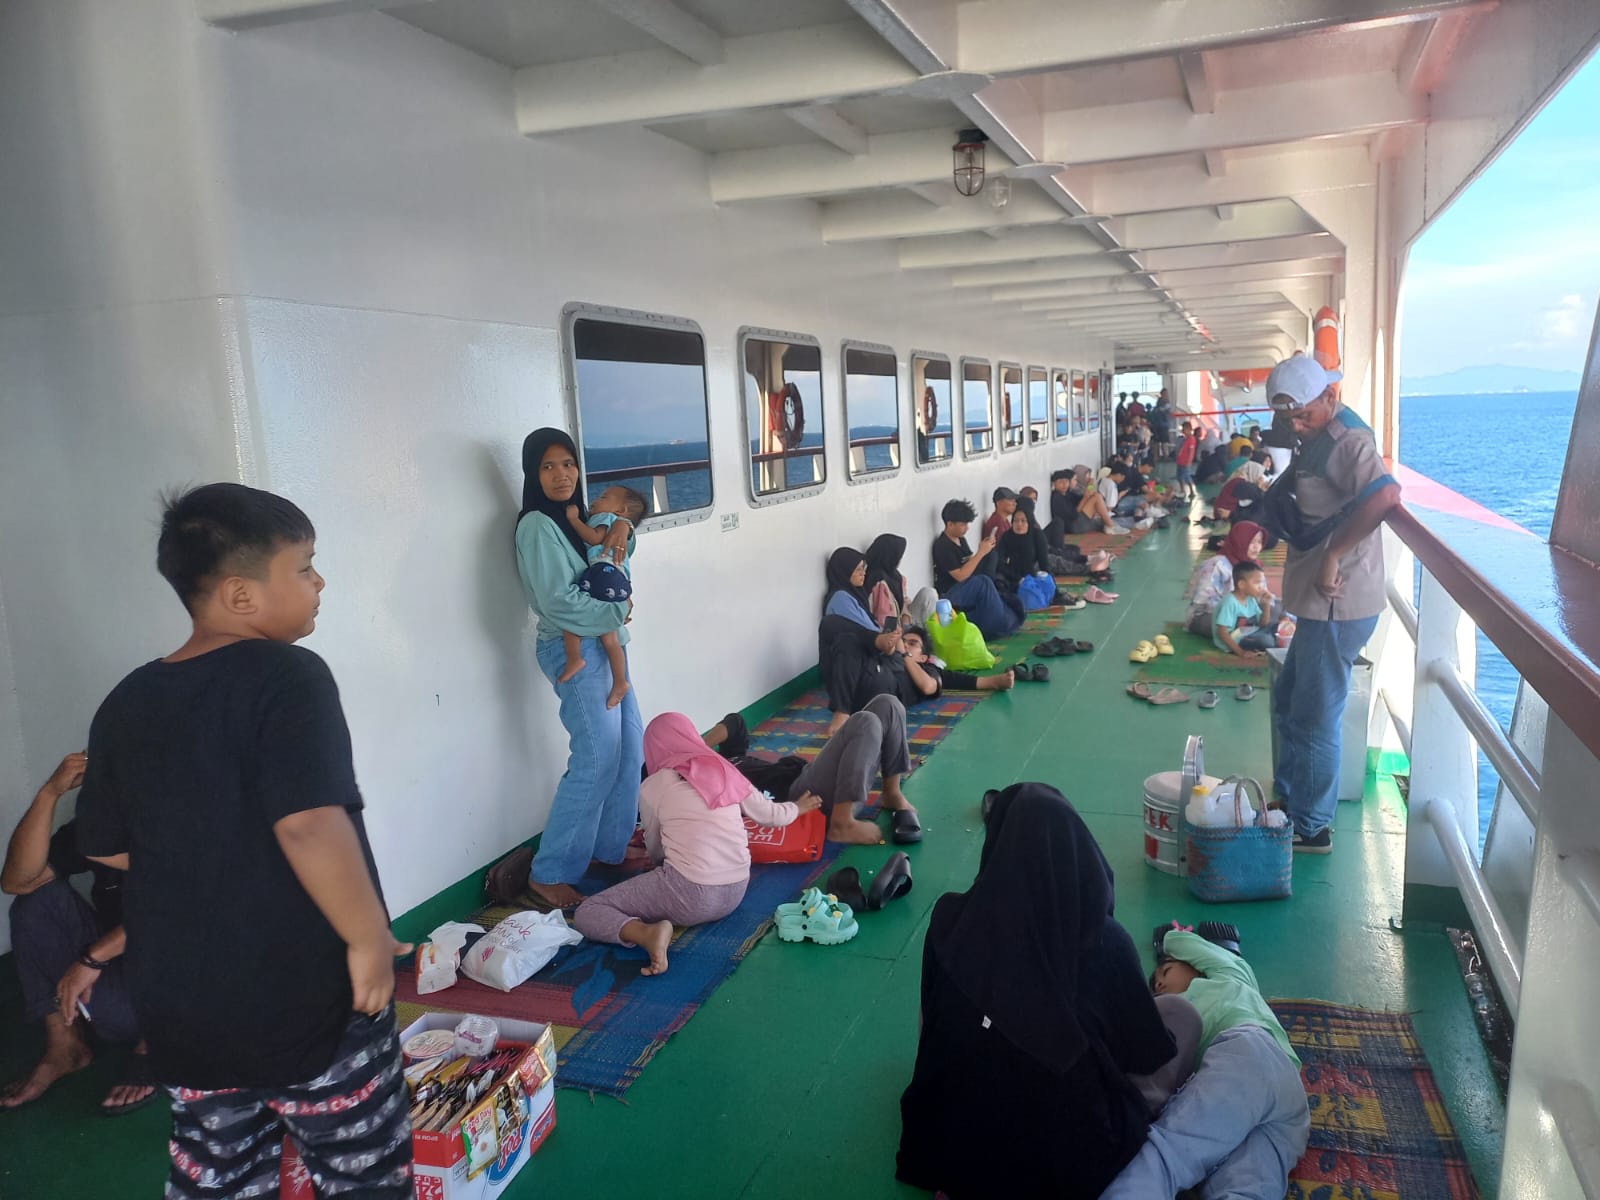 Demi Capai Kampung Halaman, Pemudik Berjubel di kapal KM RAPUTRA 2888 Tujuan Sumatera